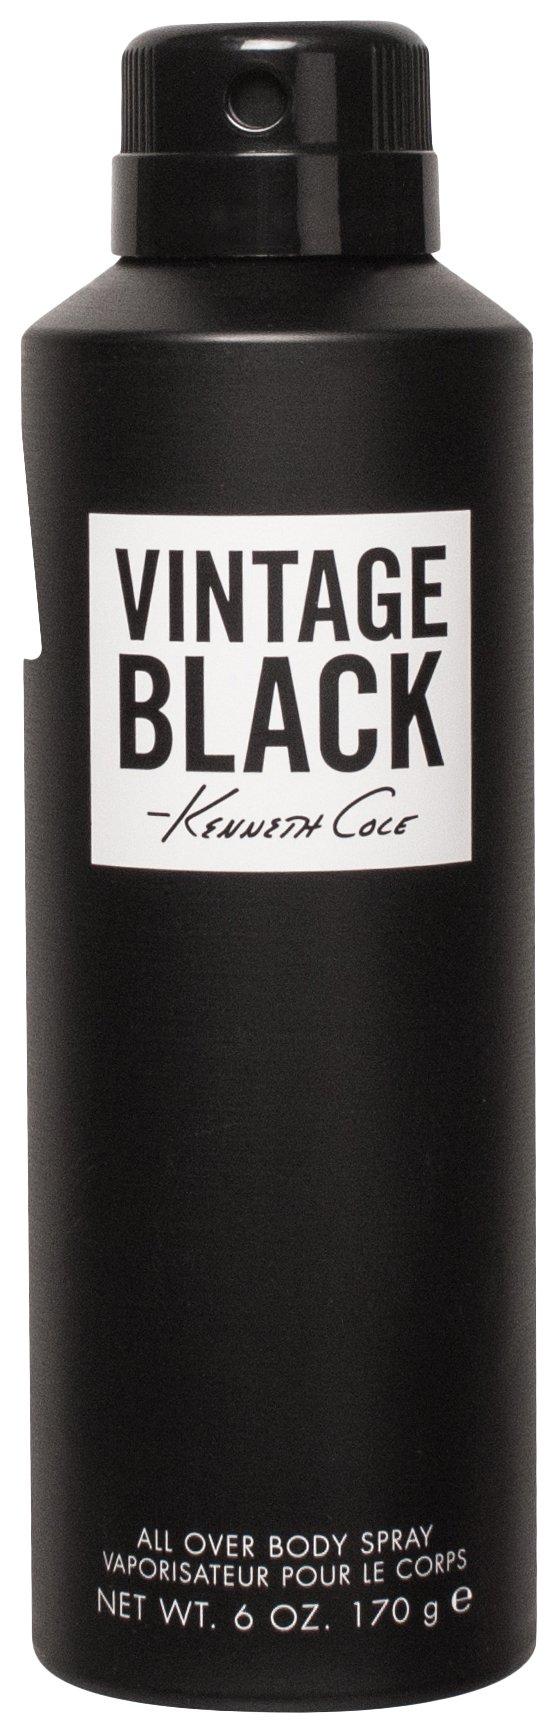 Kenneth Cole Vintage Black Mens 6 fl. oz. Body Spray